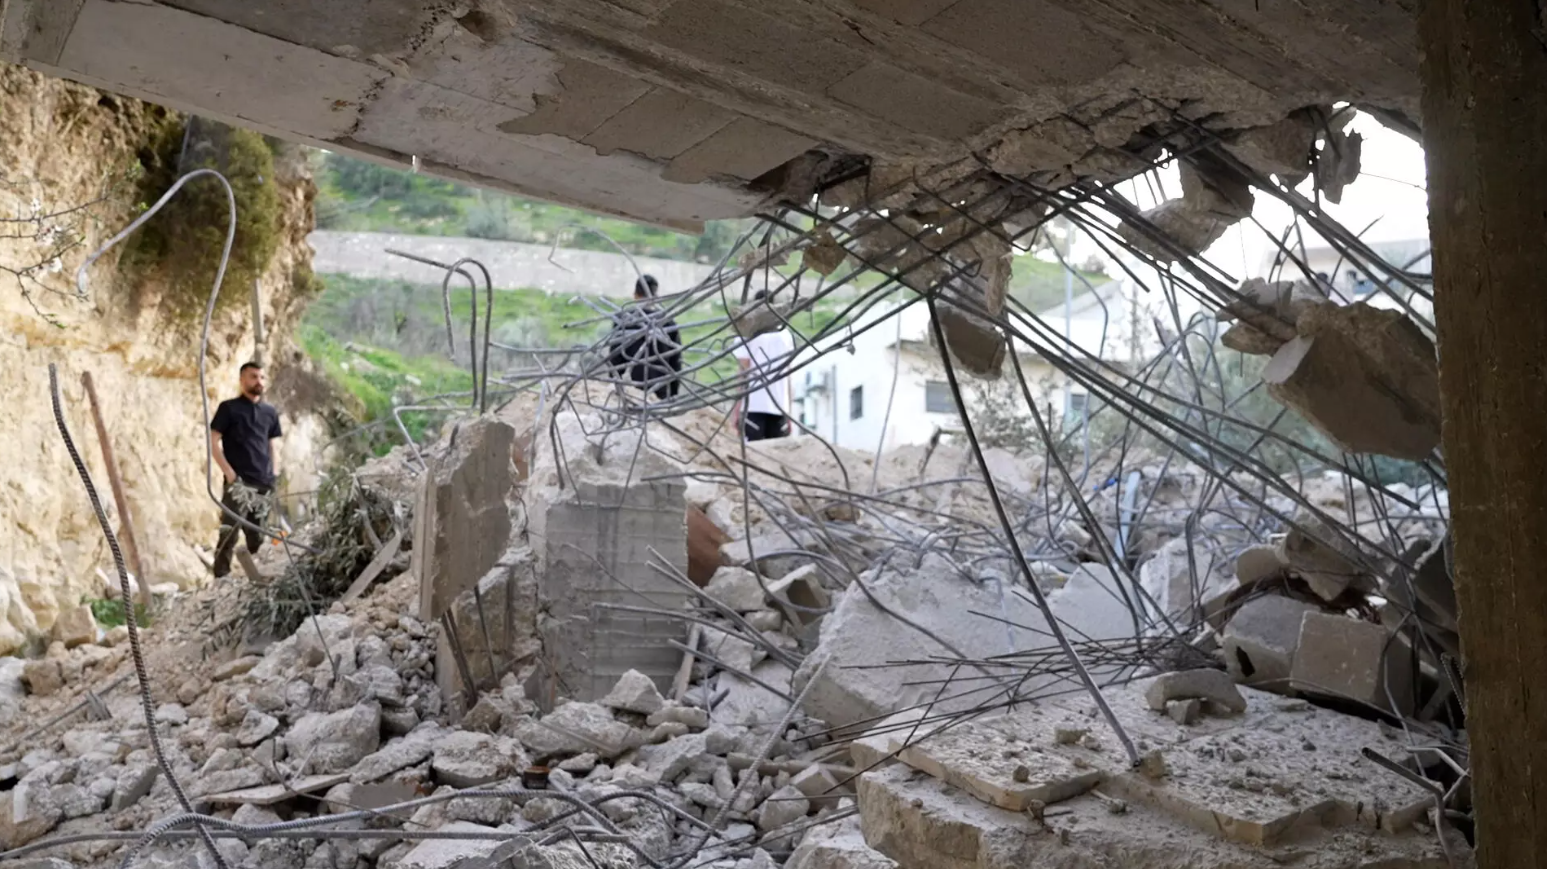 Las demoliciones de viviendas palestinas son un hecho frencuente del apartheid israelí.